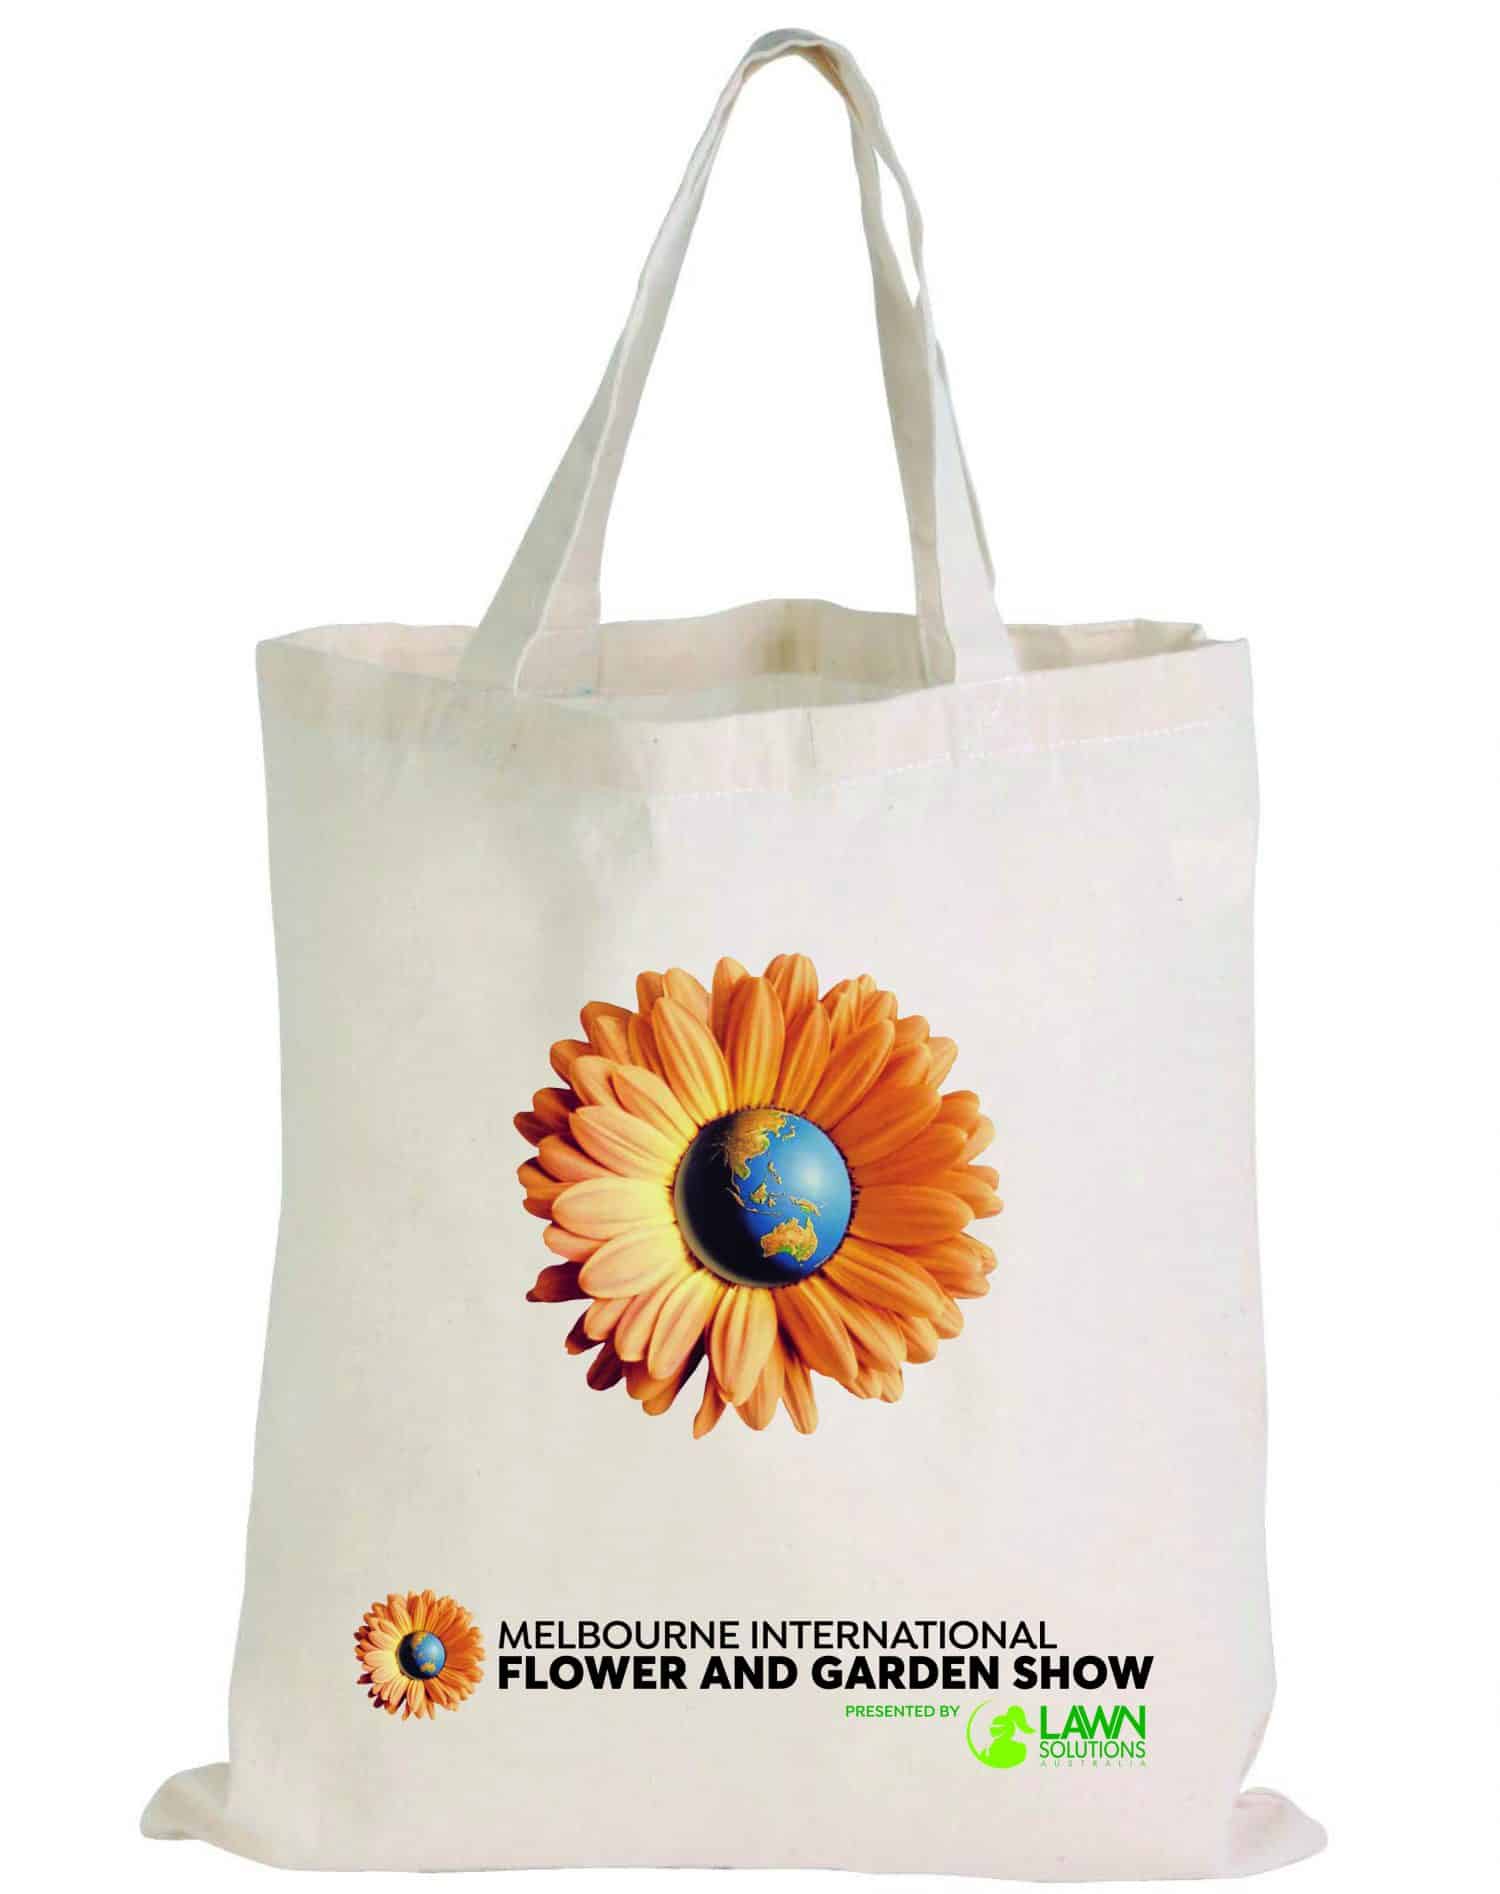 NEW: Merchandise - Melbourne International Flower & Garden Show